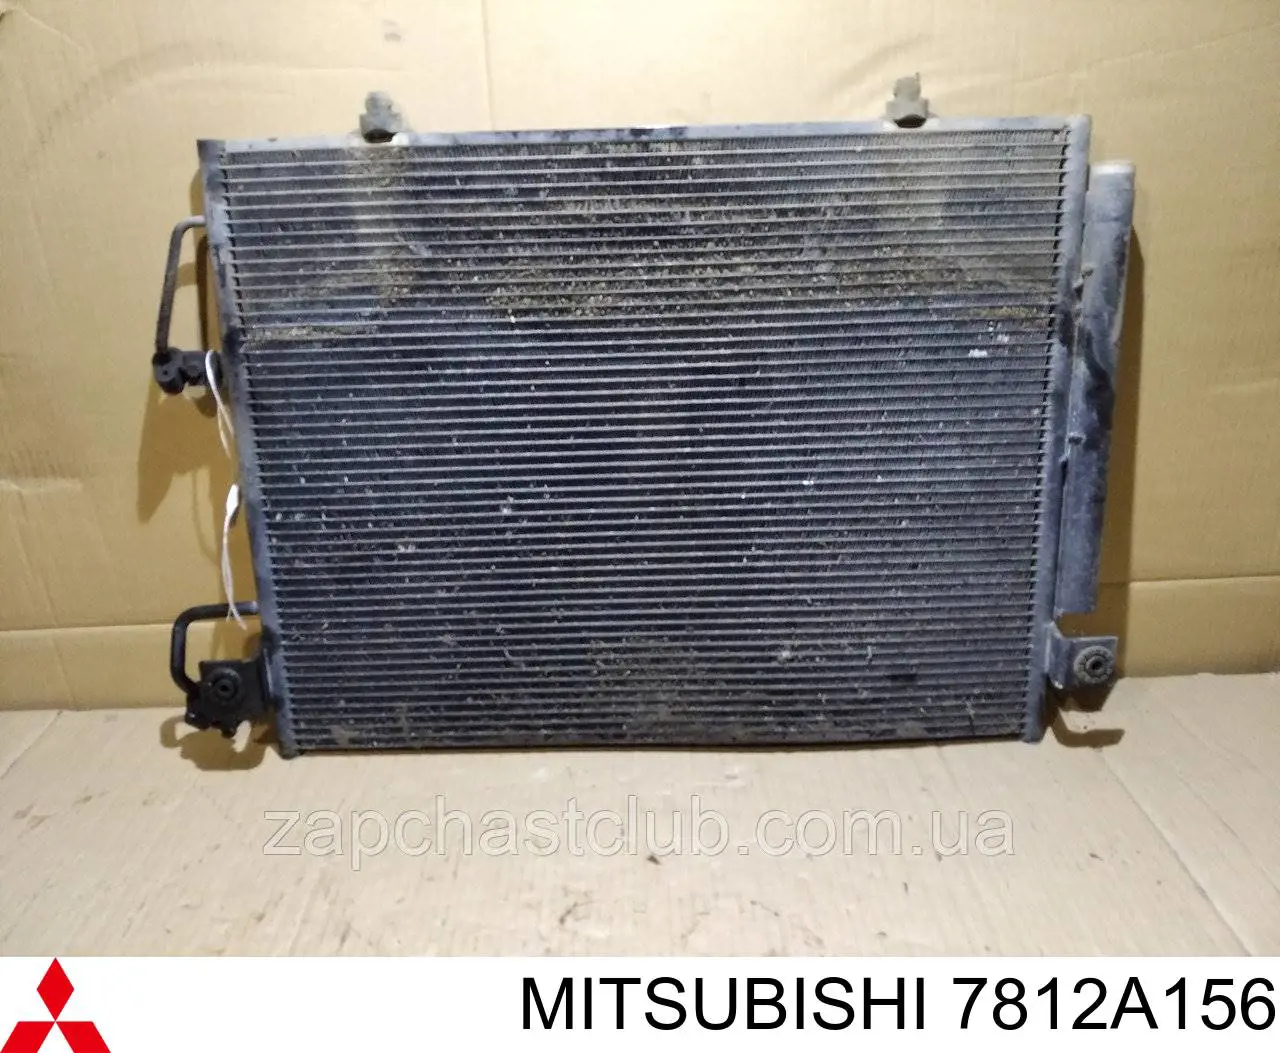 Радиатор кондиционера Mitsubishi 7812A156